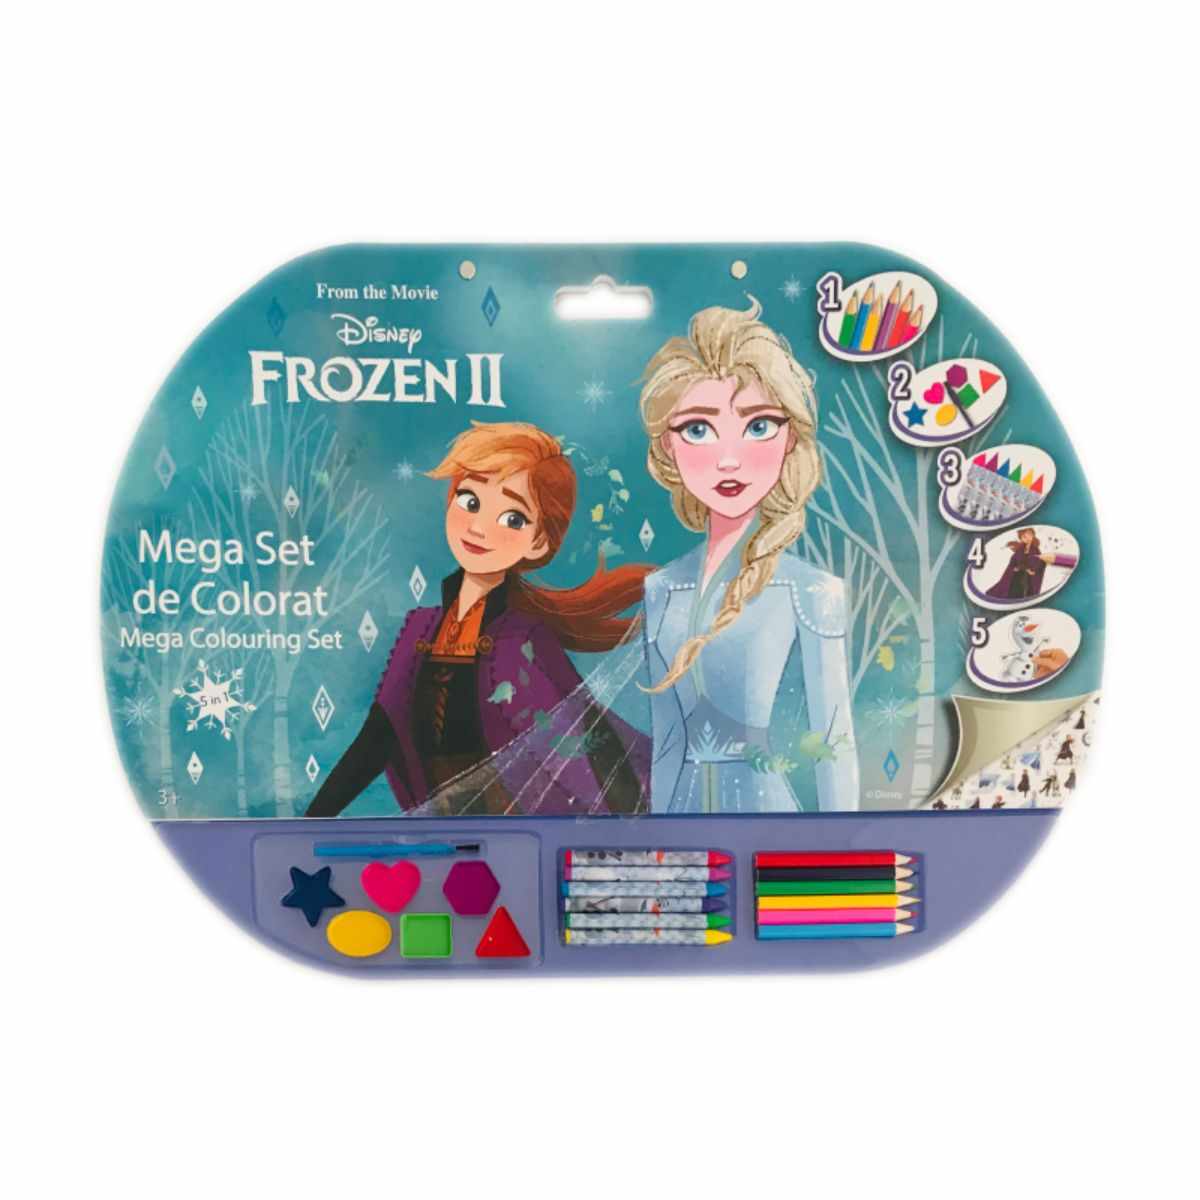 Mega Set de colorat 5 in 1, Frozen II